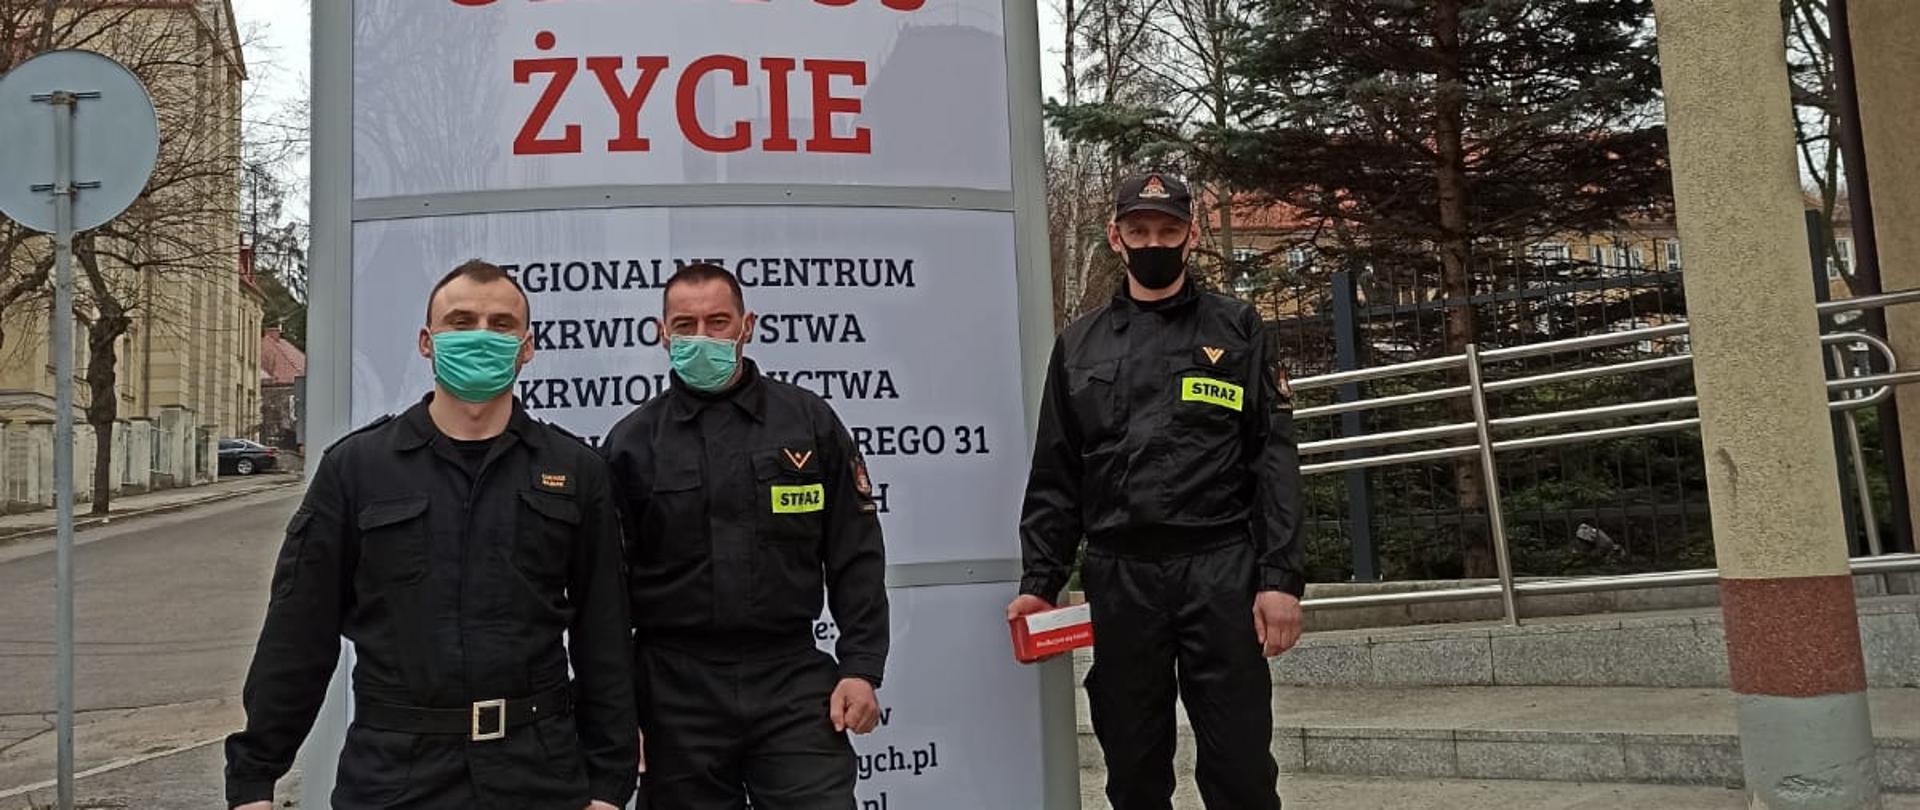 Na pierwszym planie trzech funkcjonariuszy w umundurowaniu bojowym z założonymi na twarzy maseczkami. Za nimi pylon reklamowy Regionalnego Centrum Krwiodawstwa i Krwiolecznictwa w Wałbrzychu.